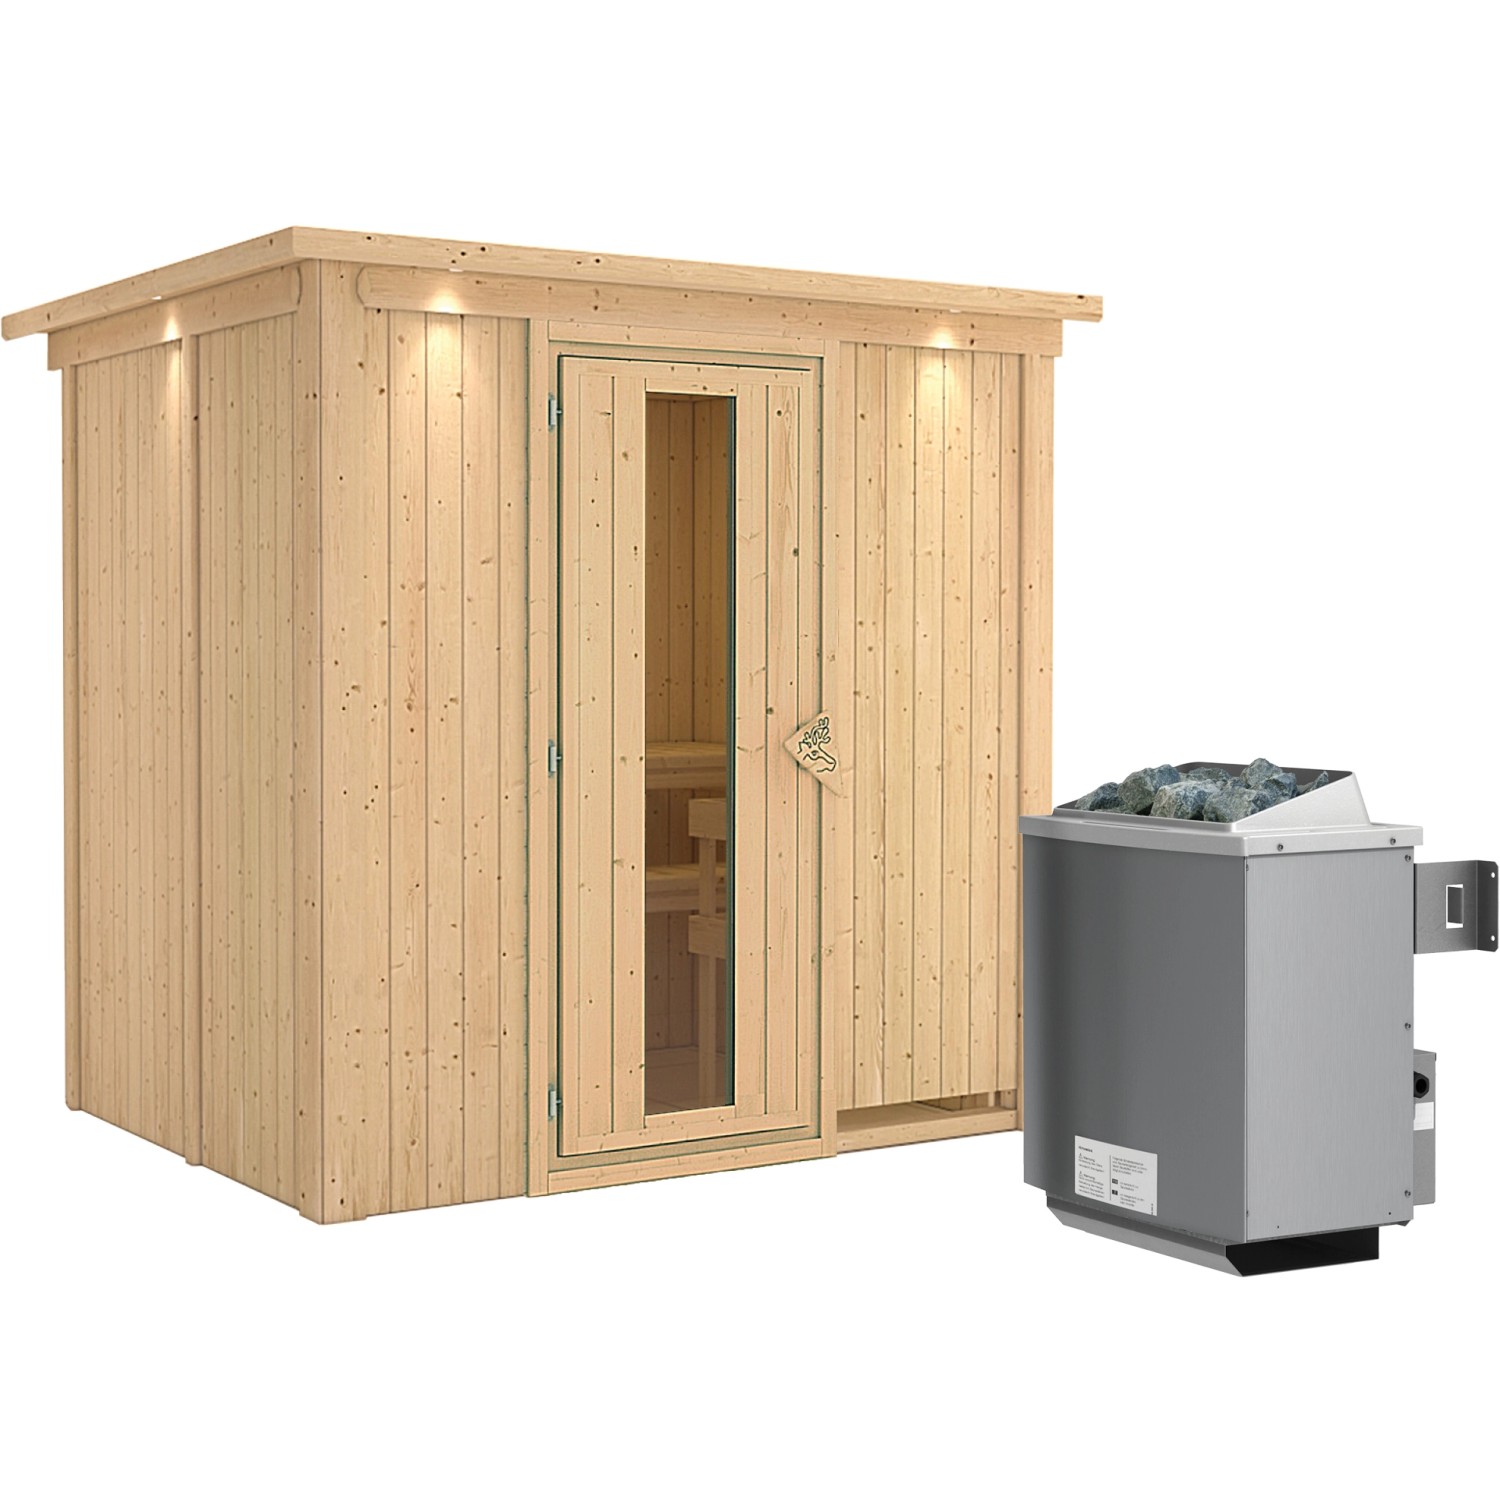 Karibu Sauna-Set Bjarne inkl. Ofen 9 kW mit integr. Steuerung, Dachkranz günstig online kaufen